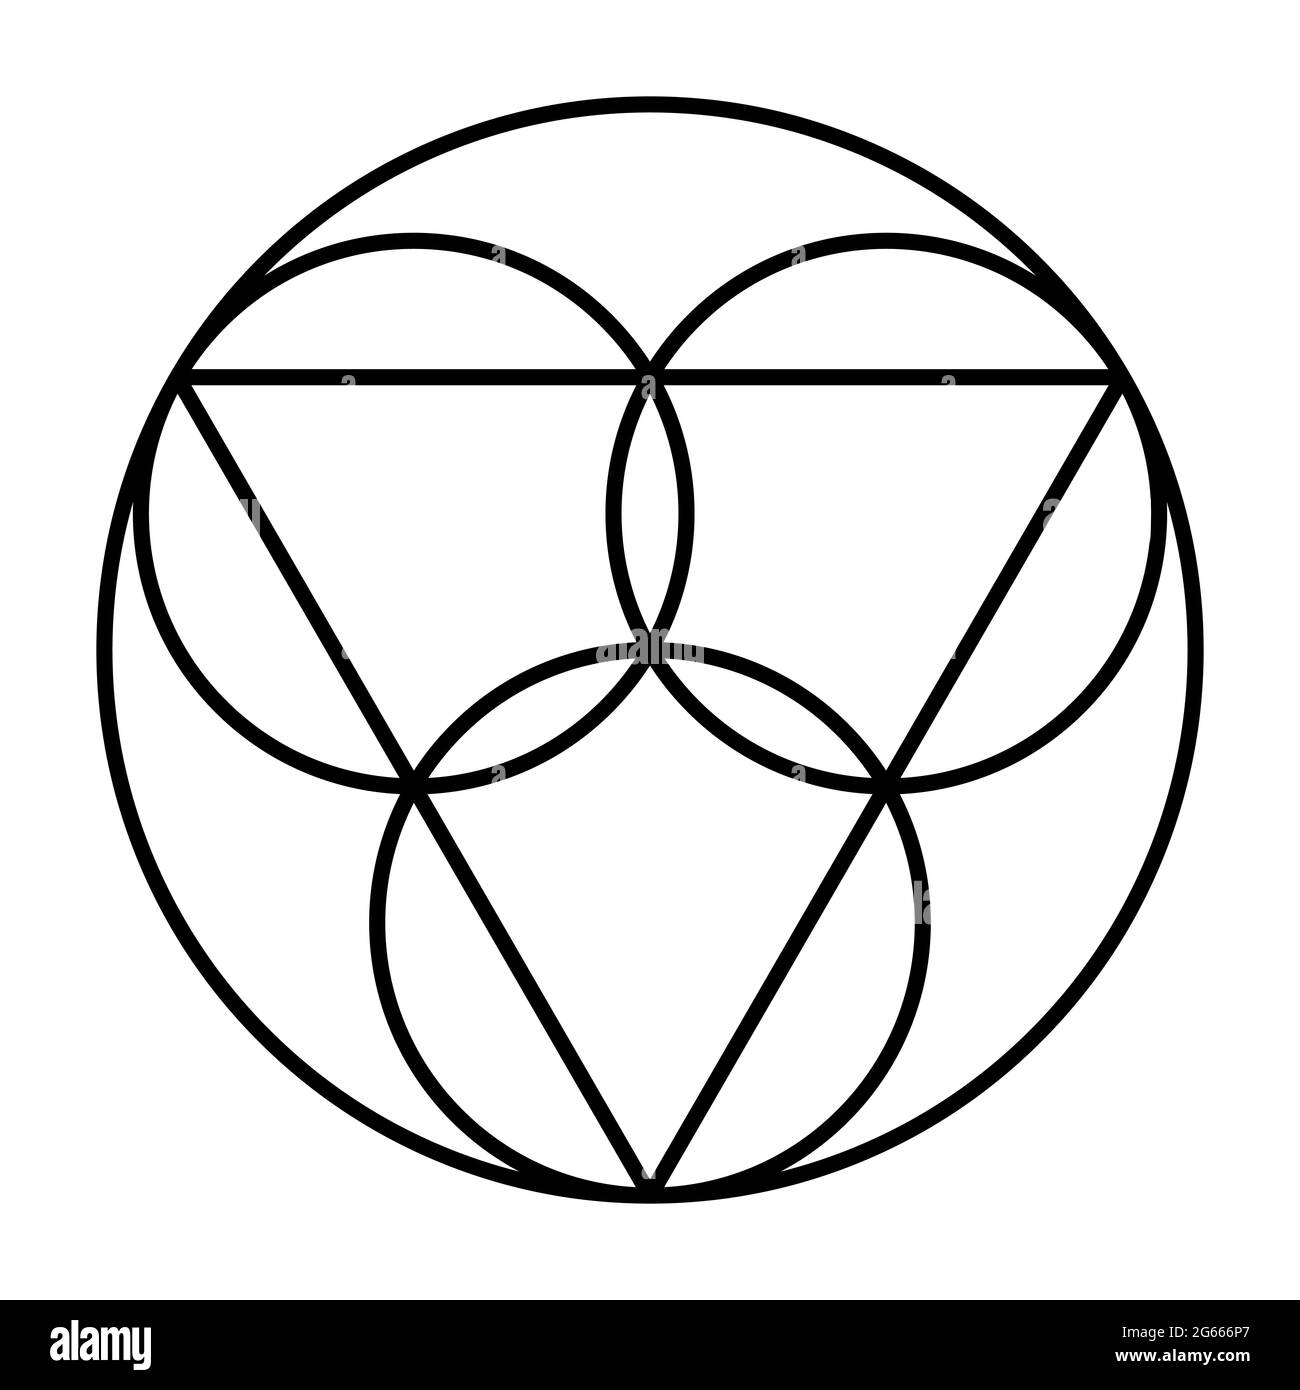 Simbolo della Trinità. Tre cerchi, che rappresentano le persone coeterne e cospicue Padre, il Figlio Gesù Cristo e lo Spirito Santo. Foto Stock